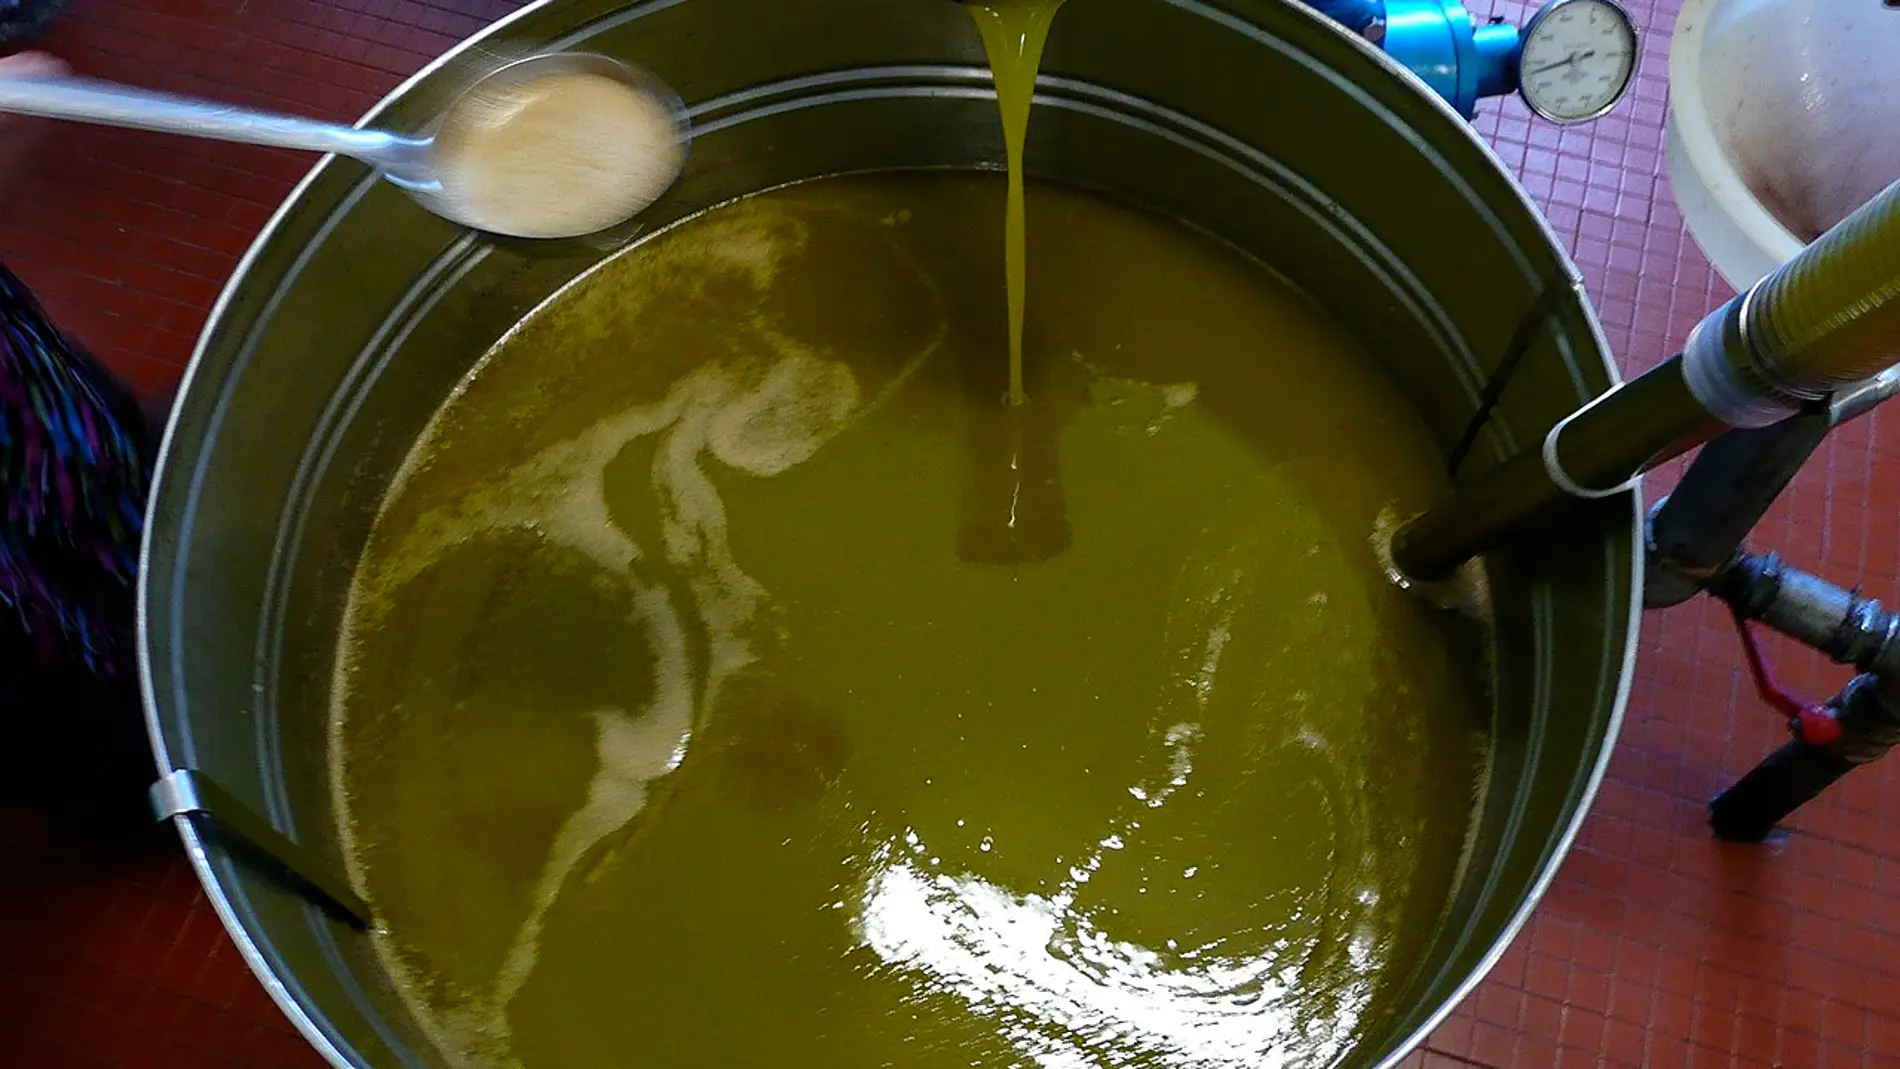 Metodo rapido para detectar micotoxinas en aceites vegetales